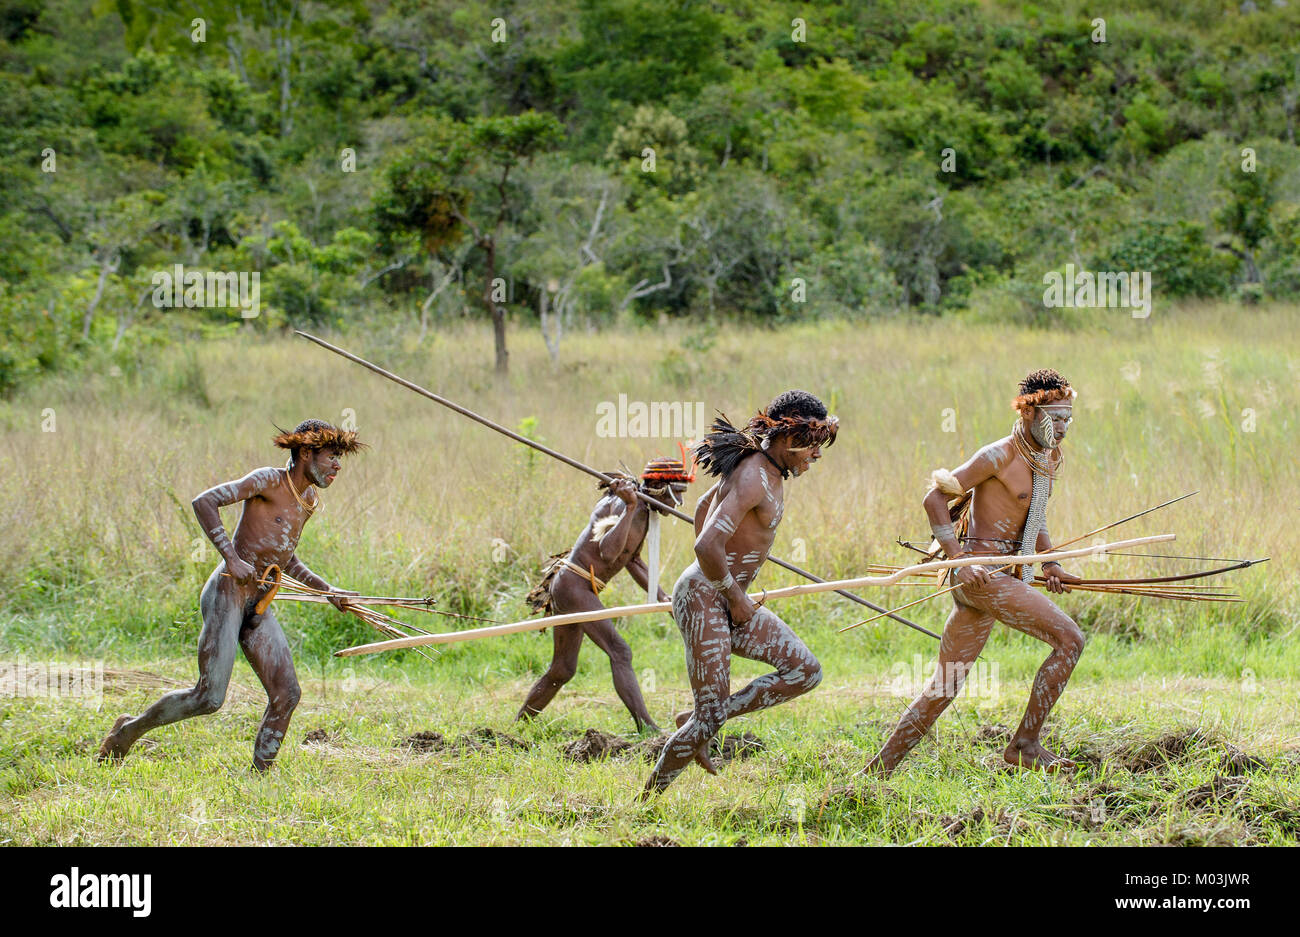 Der Angriff der bewaffneten Gruppe von papuanern. Angreifende Gruppe Krieger von Dani Stamm. Juni 4, 2016, Neu Guinea Insel. Stockfoto